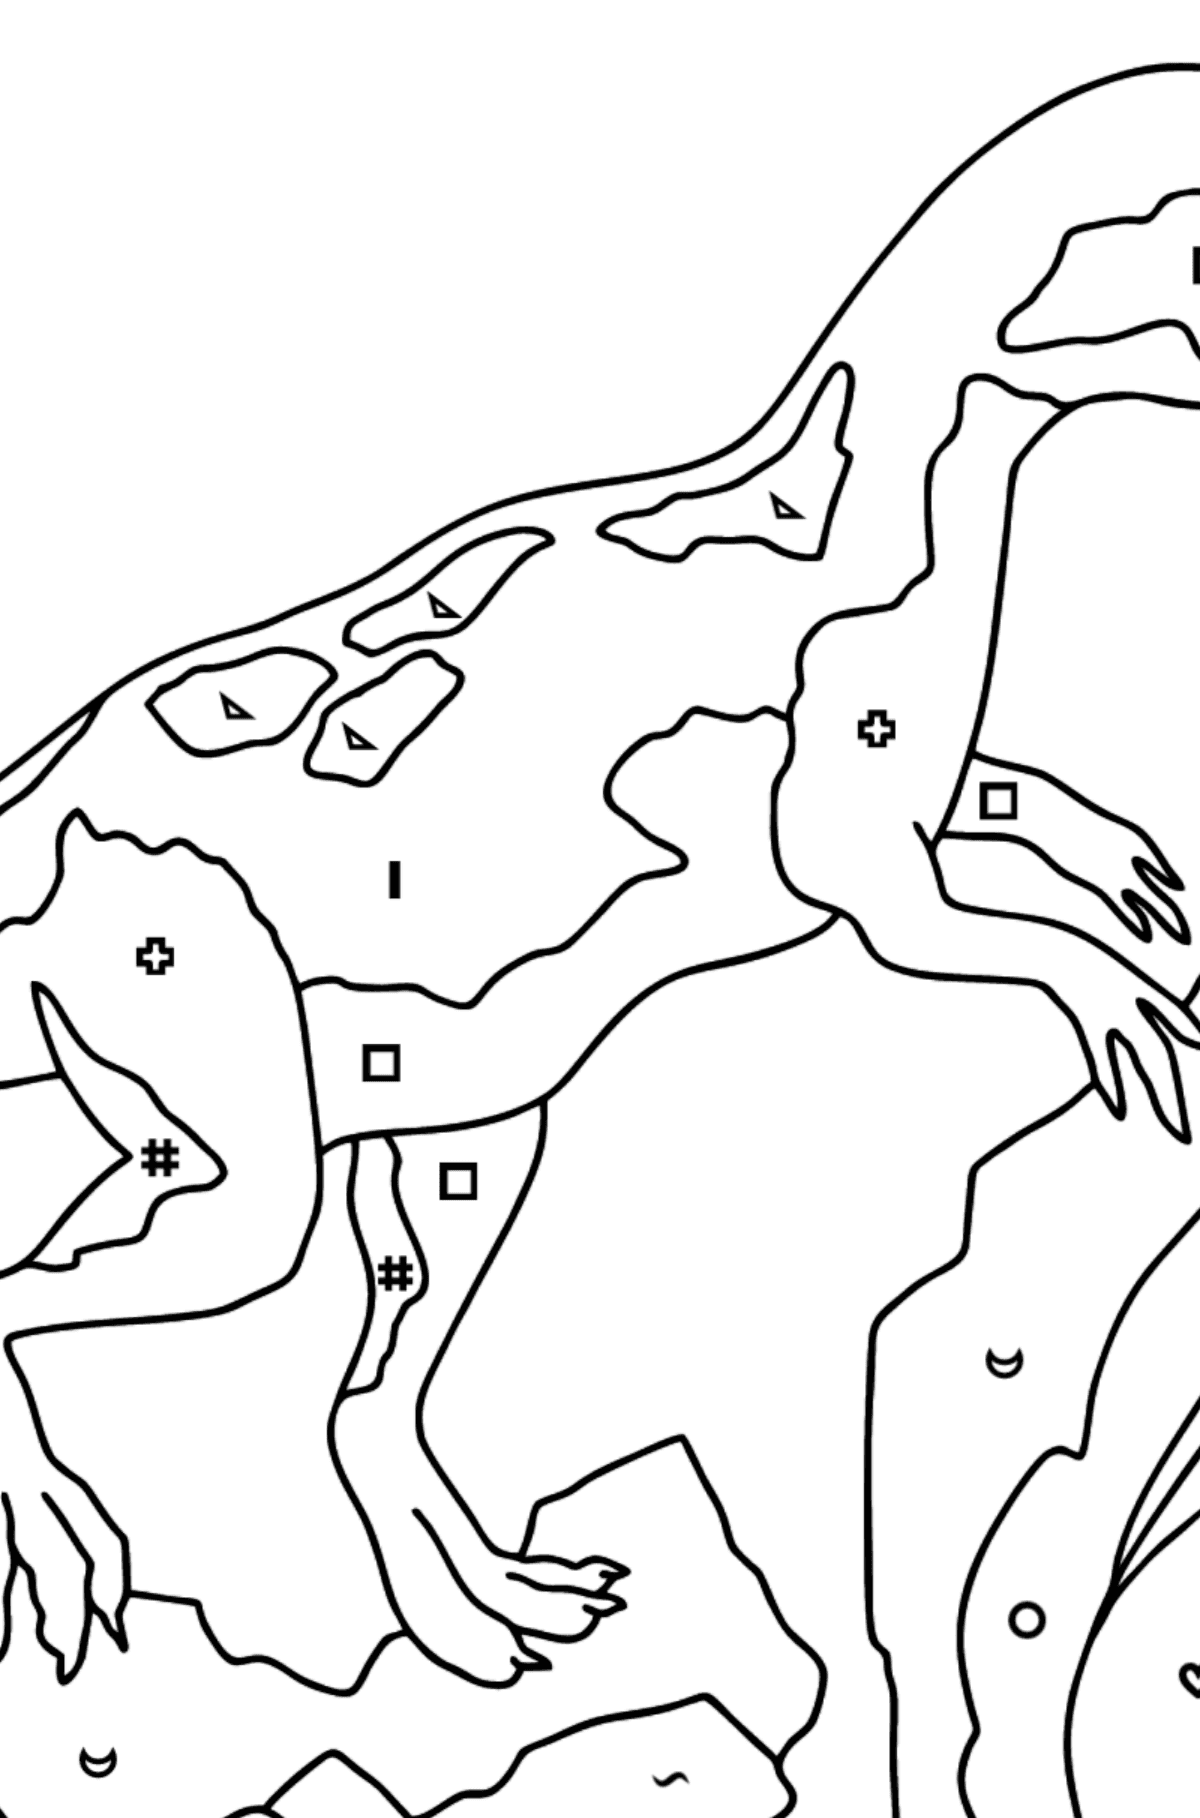 Desenho para colorir de Dinossauro Jurássico (difícil) - Colorir por Símbolos para Crianças